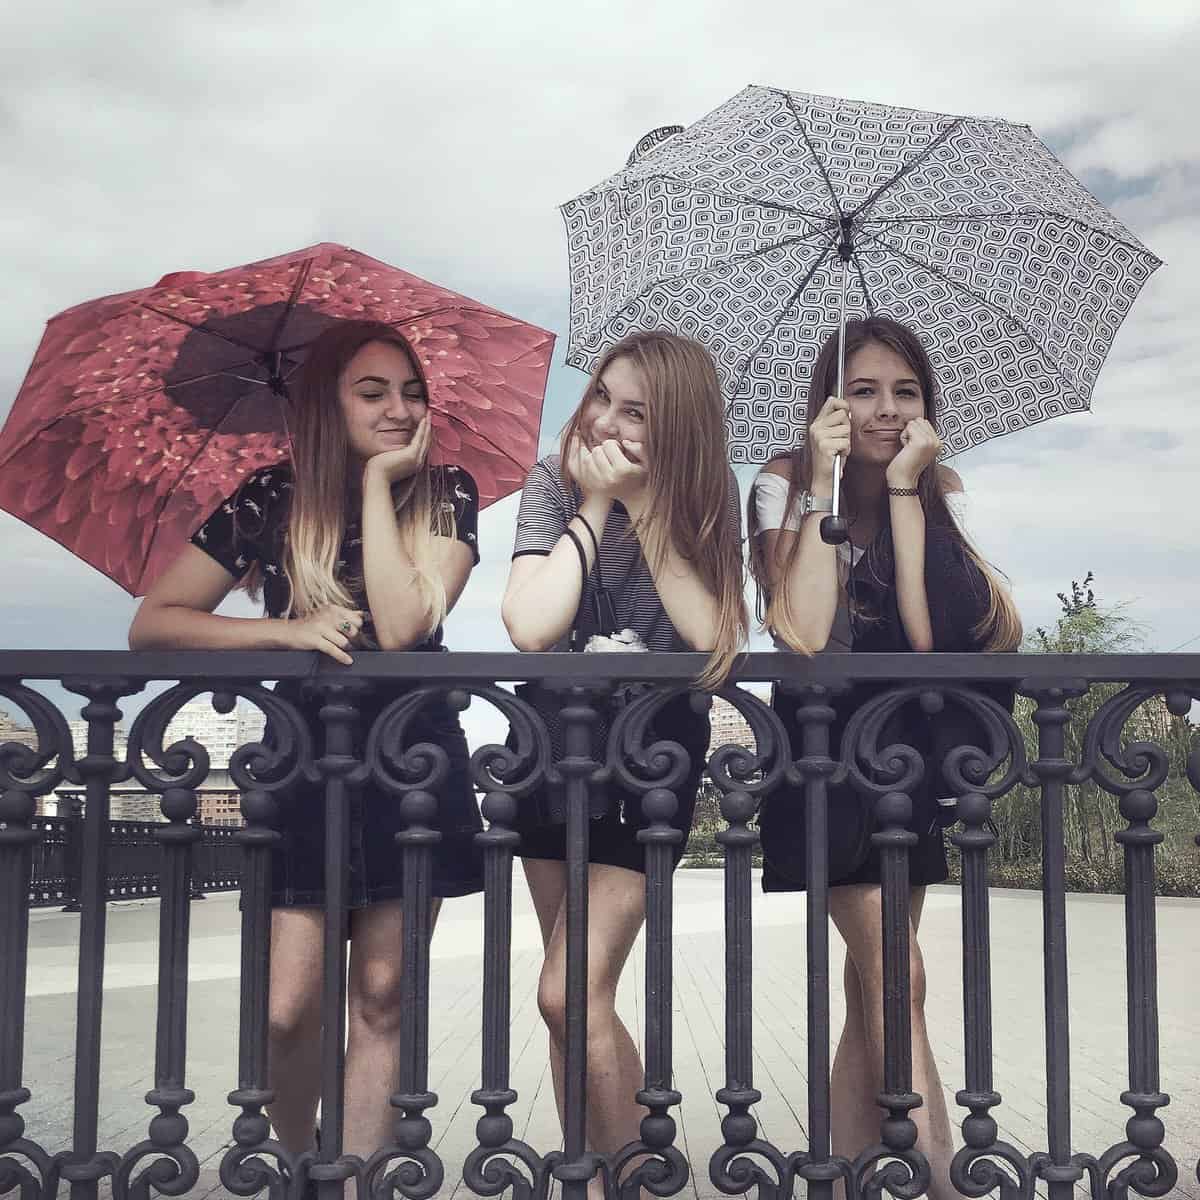 Girls in the summertime in Krasnodar by Dmitry Markov.